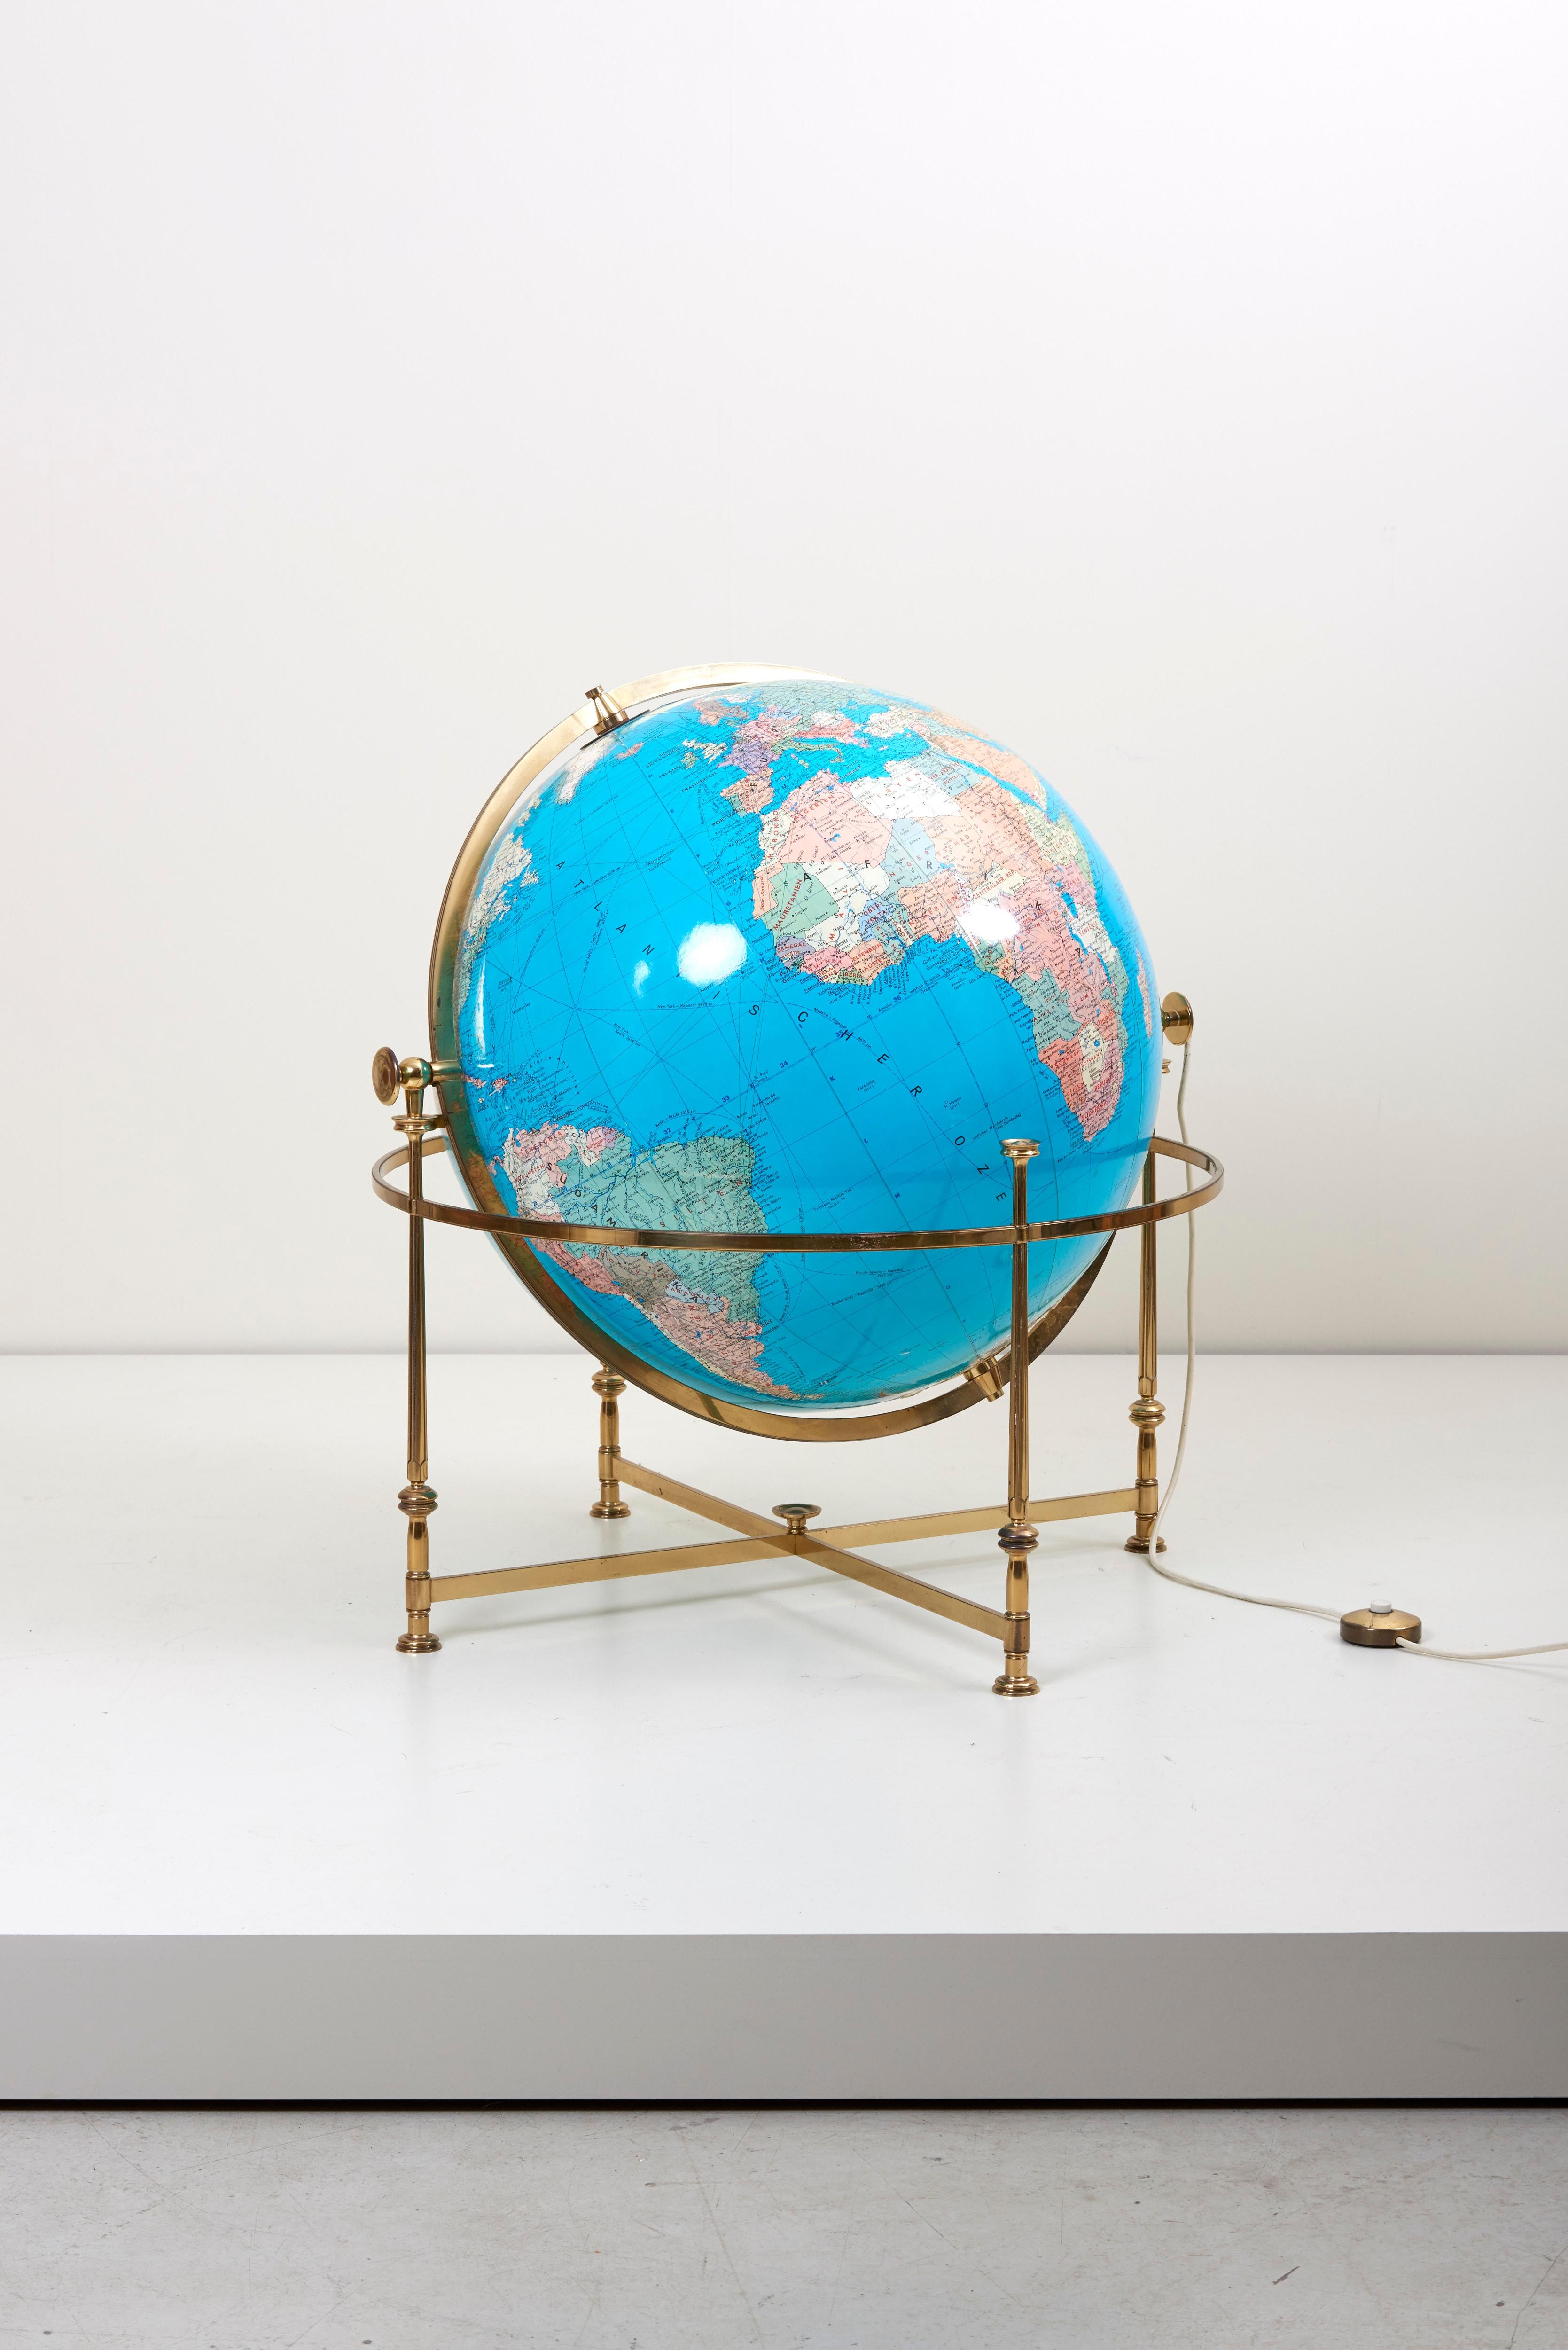 Merveilleux et rare globe illuminé avec un support en laiton. Le globe est rotatif et réglable en hauteur.